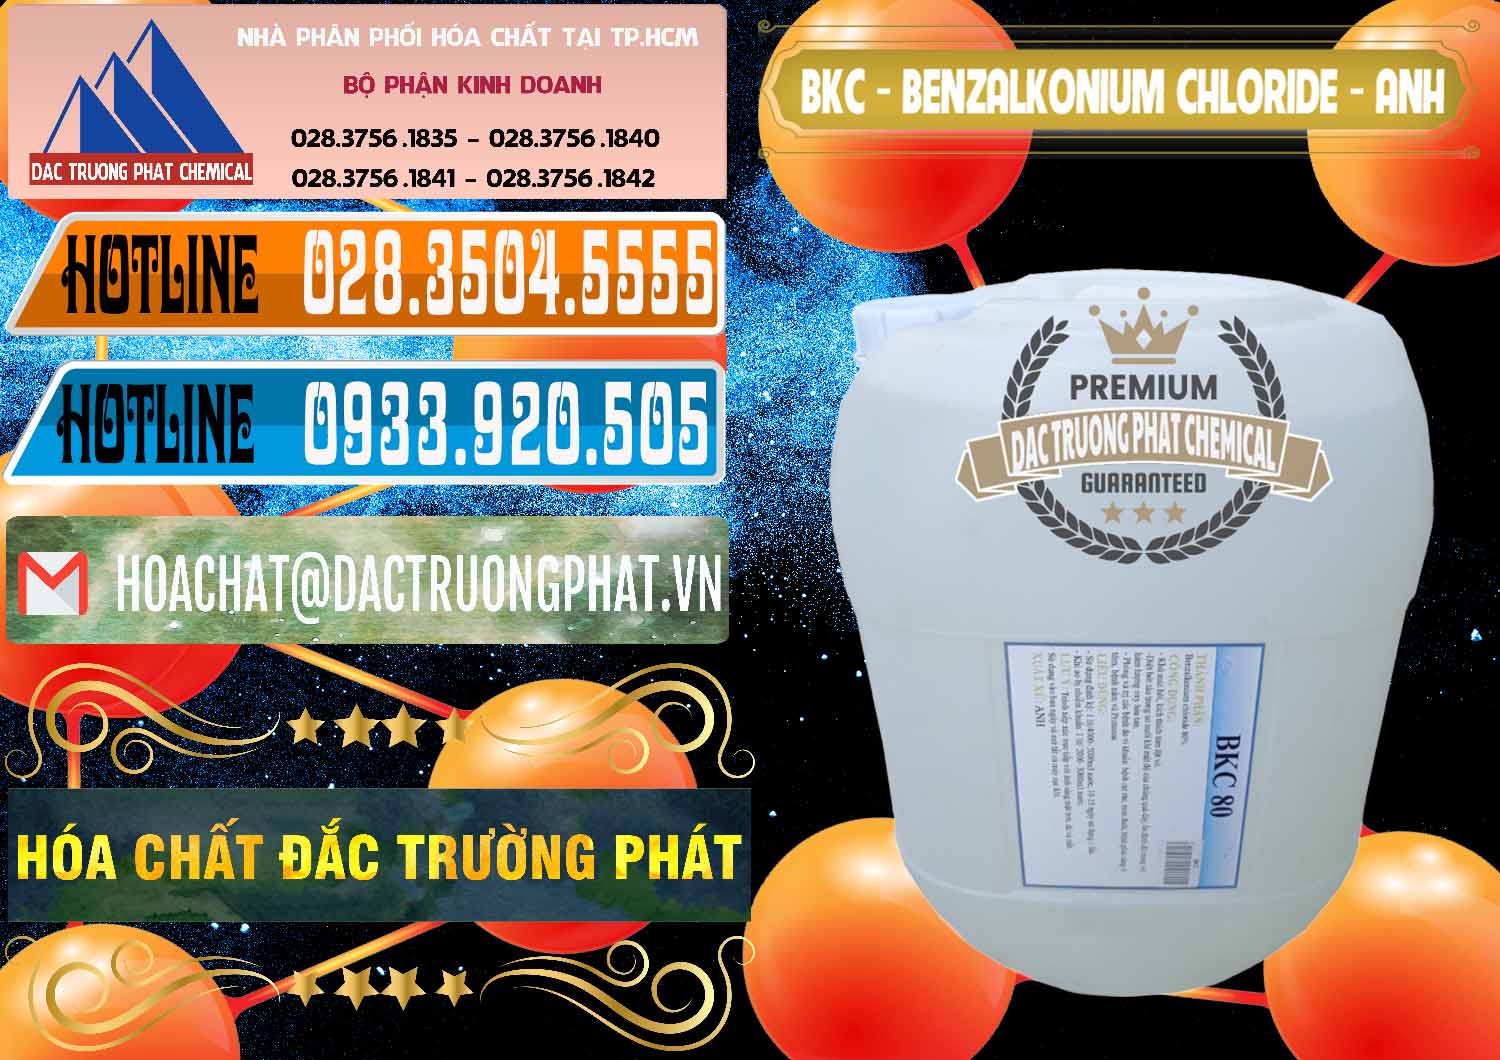 Cty chuyên kinh doanh _ bán BKC - Benzalkonium Chloride Anh Quốc Uk Kingdoms - 0415 - Đơn vị chuyên kinh doanh _ cung cấp hóa chất tại TP.HCM - stmp.net